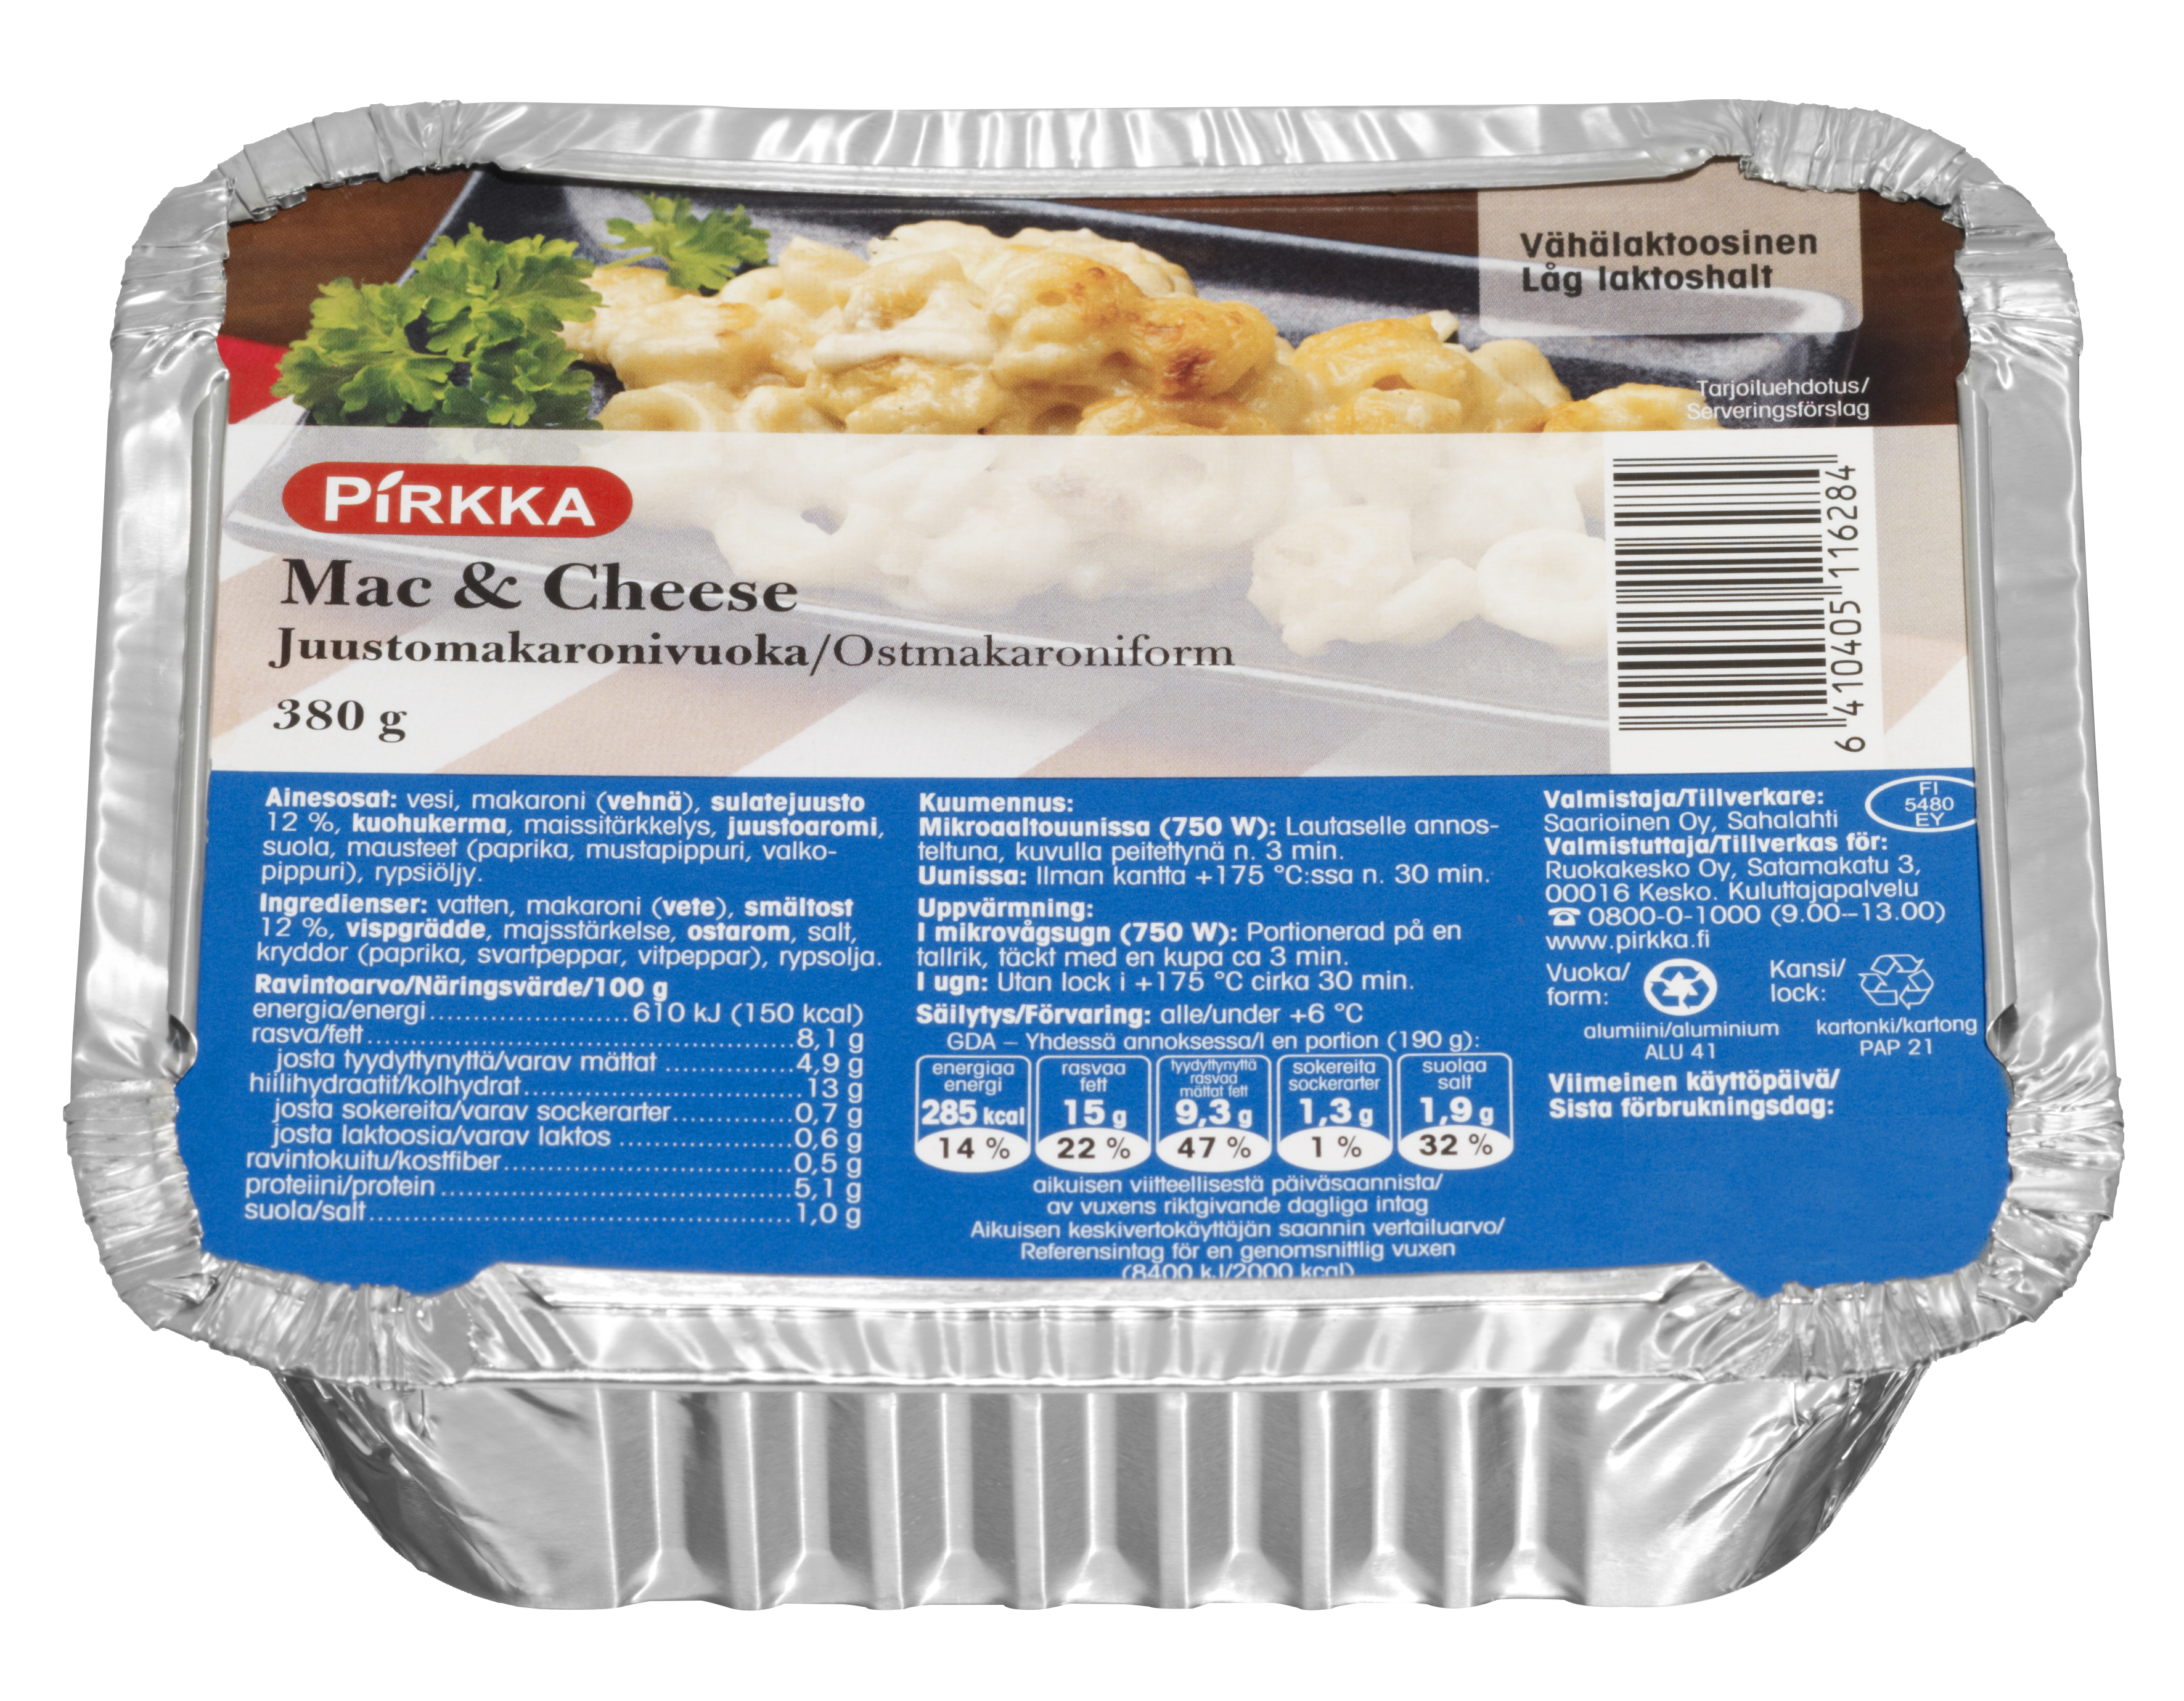 Pirkka mac&cheese juusto-makaronivuoka 380g | K-Ruoka Verkkokauppa